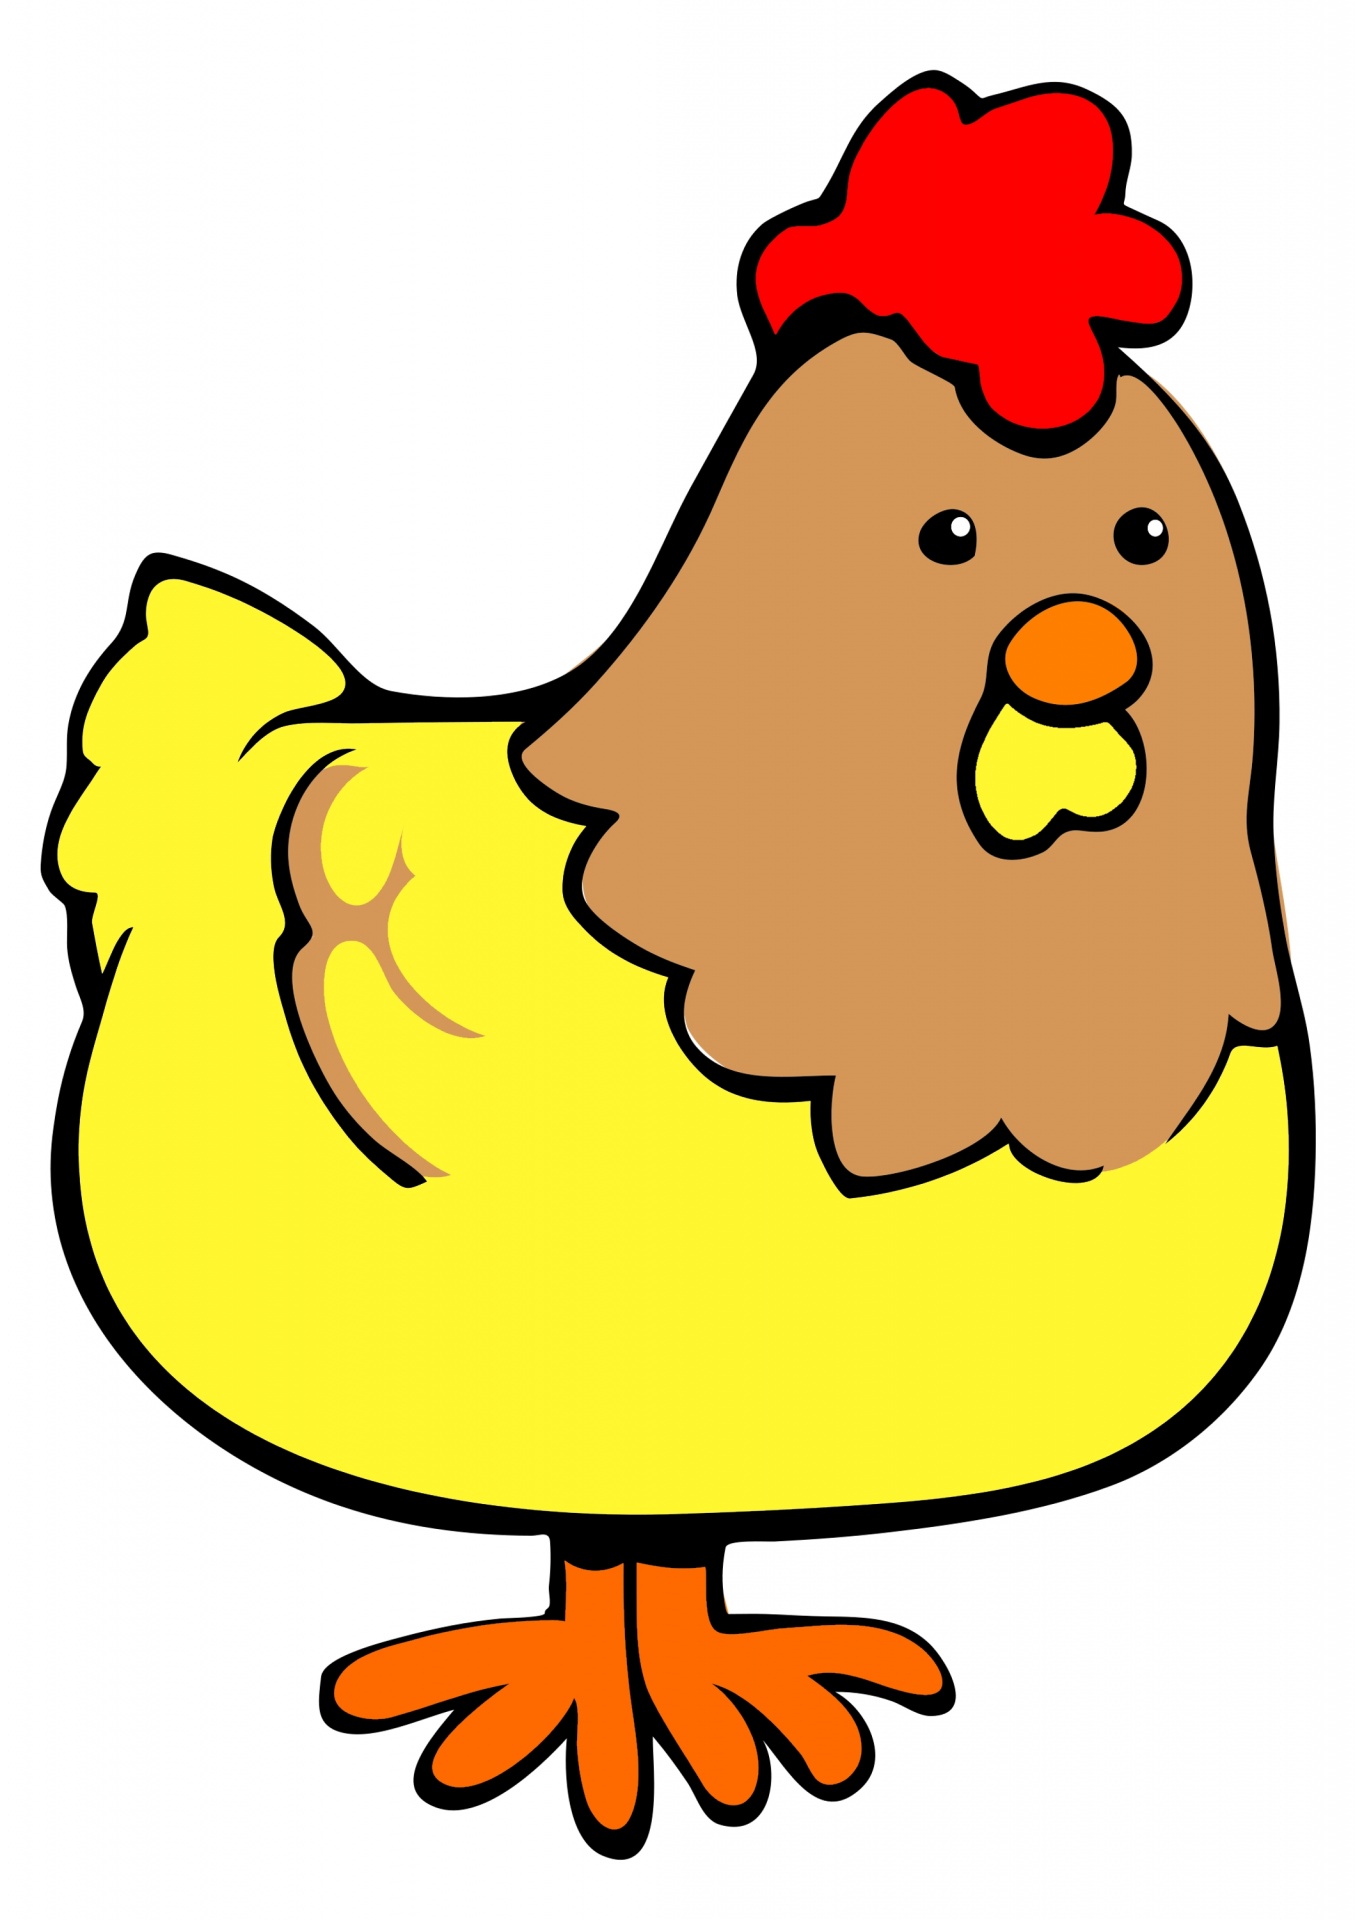 鶏の漫画 無料画像 - Public Domain Pictures